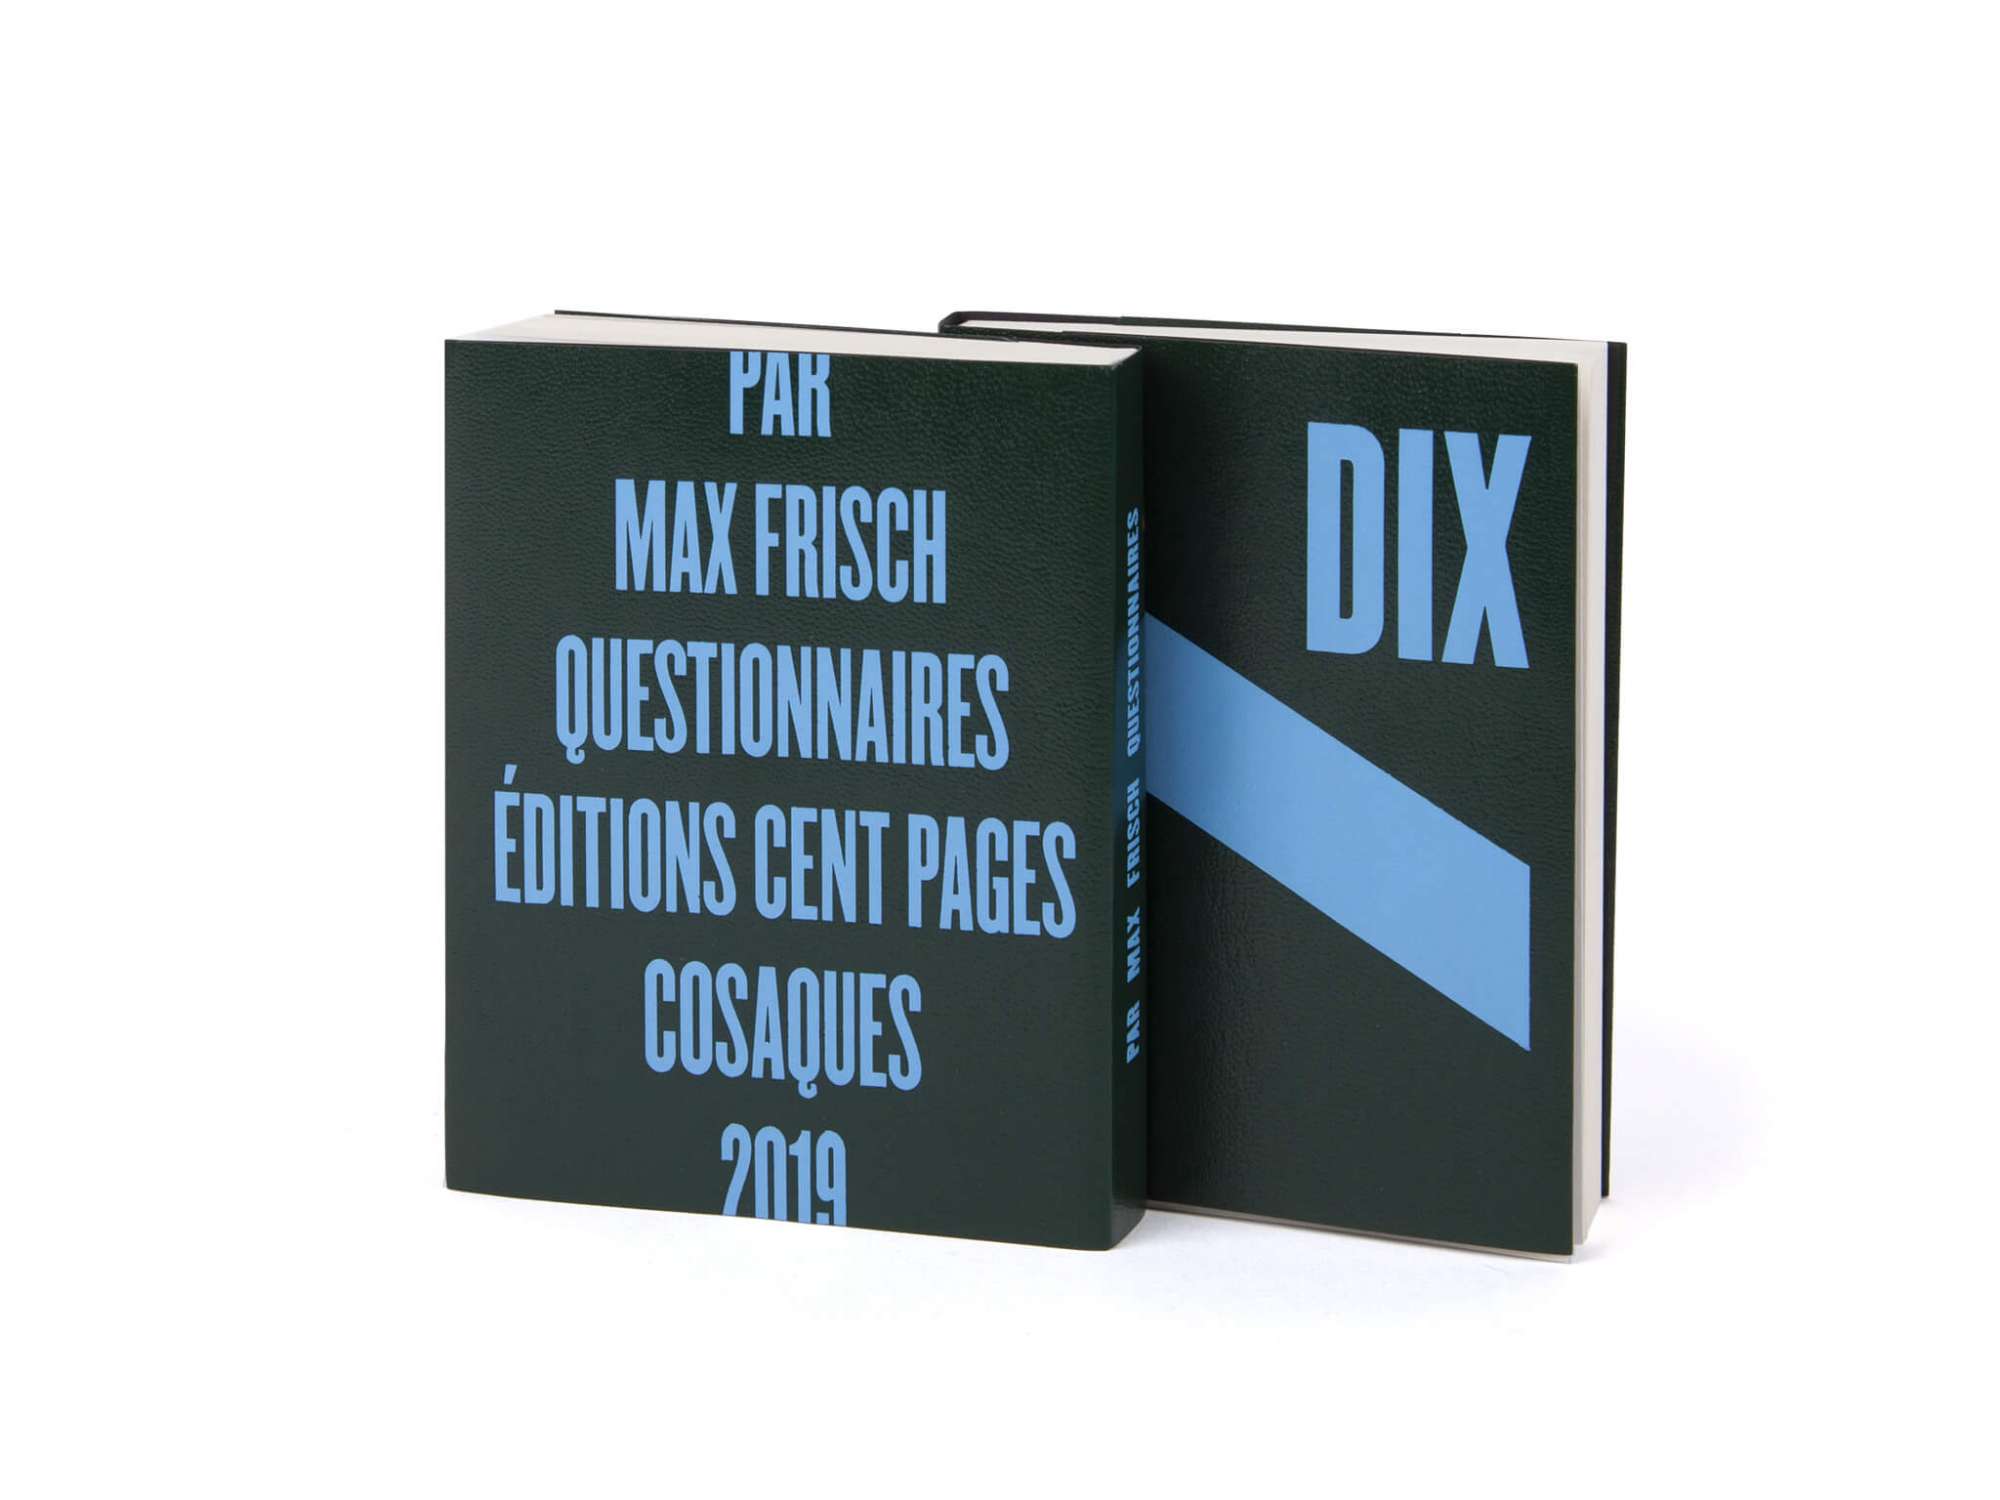 Max Frisch Questionnaires Éditions cent pages jaquette marquage à chaud bleu